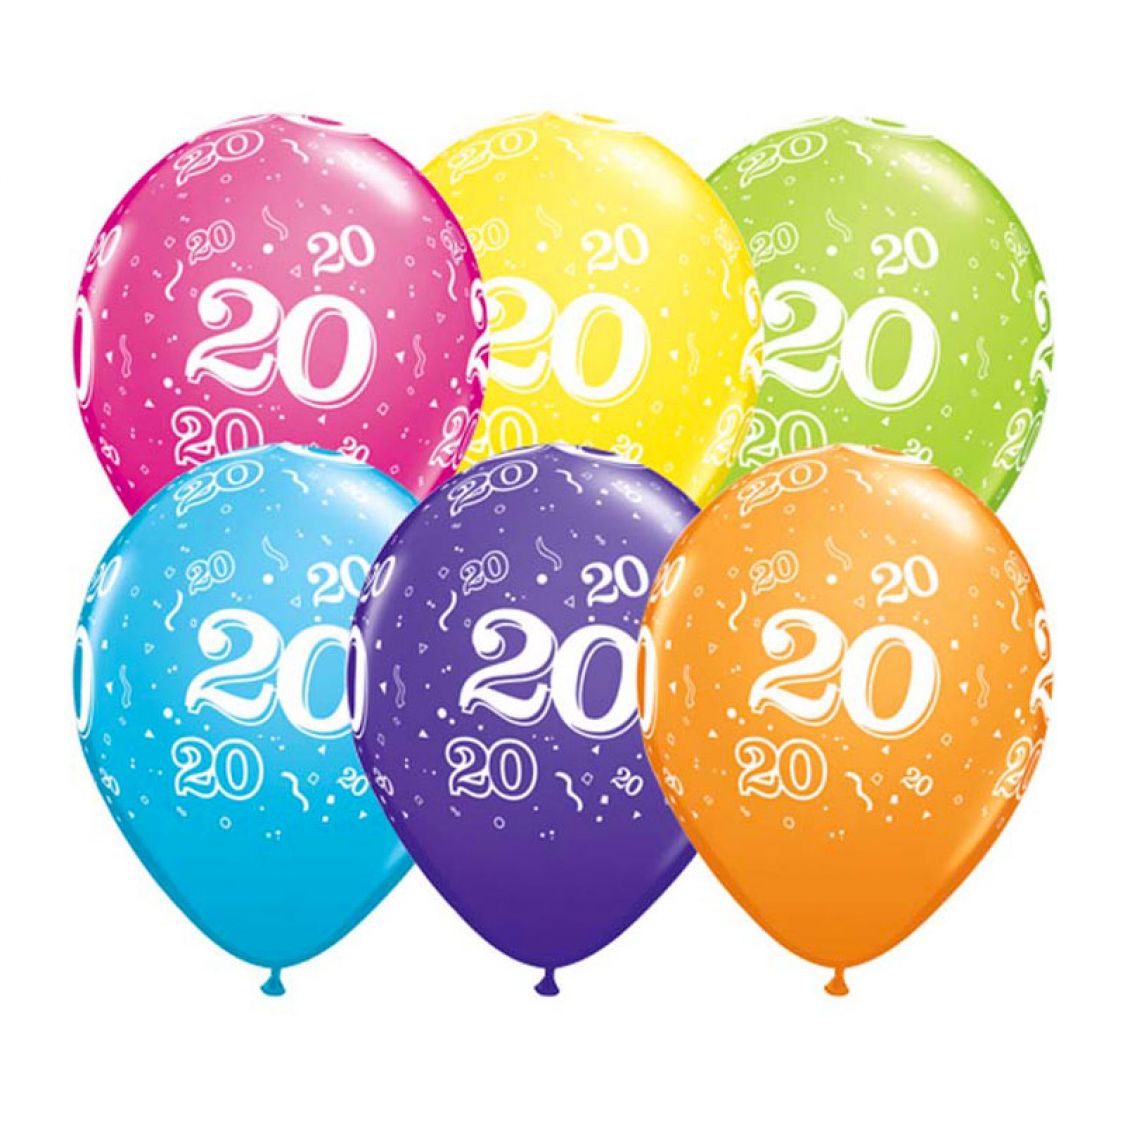 ncais Nom du produit : Ballon Qualatex 20 ans assortiment tropical